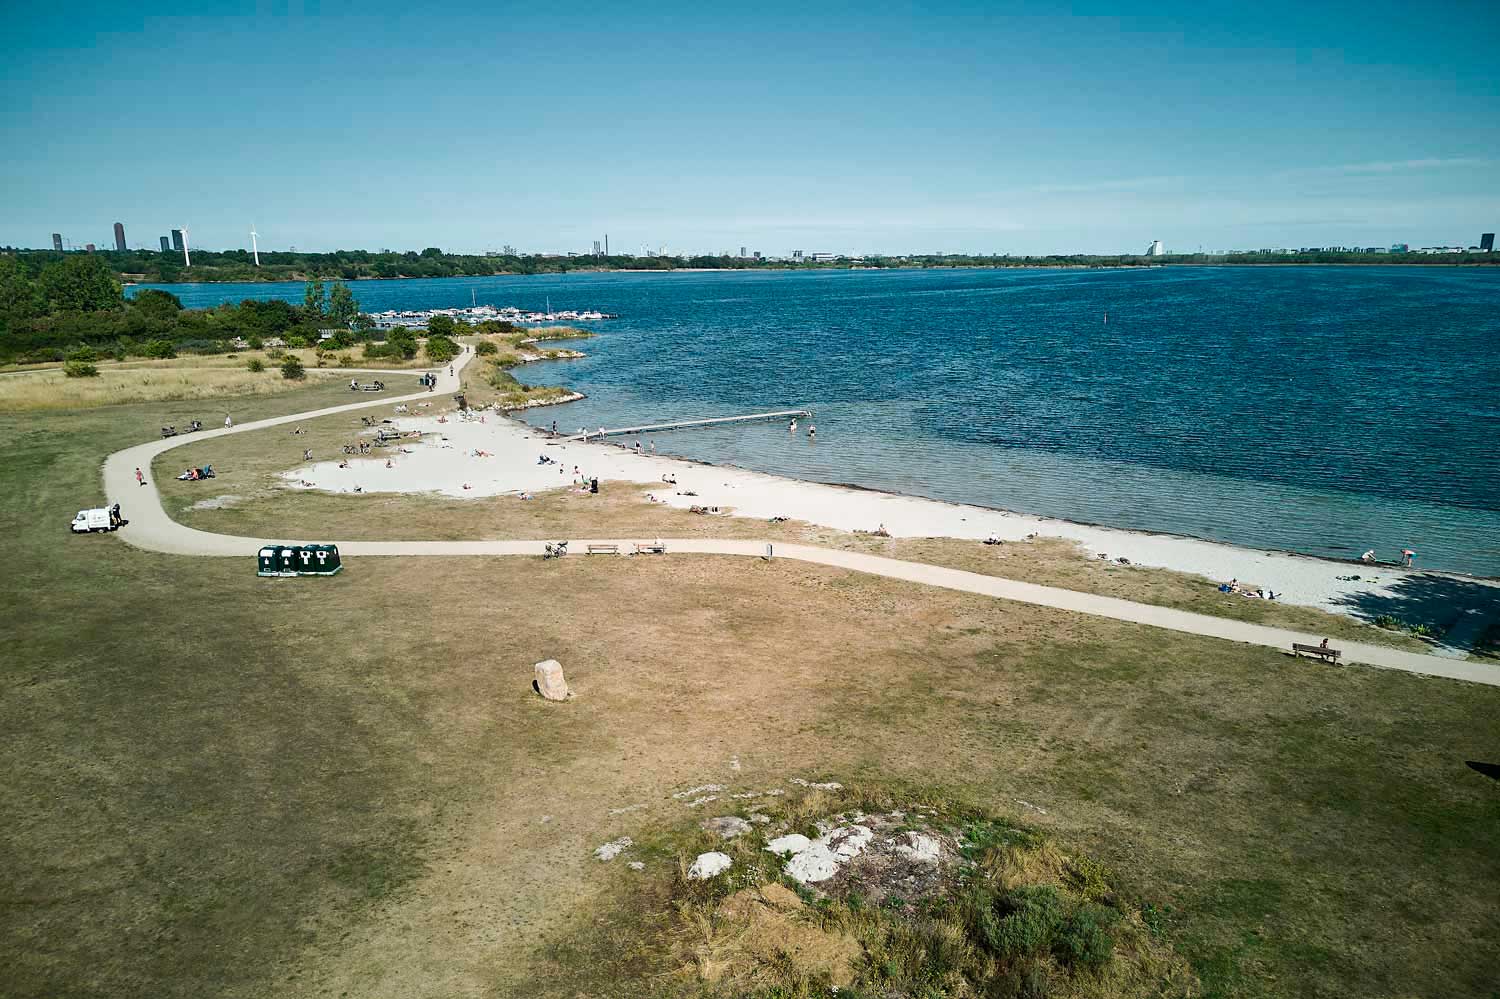 Hvidovre strandpark har en lang badestrand, som er meget børnevenlig med det relativt lavt vand.Her er både sandstrand, badebro og et stort bagvedliggende græsareal, der indbyder til boldspil.